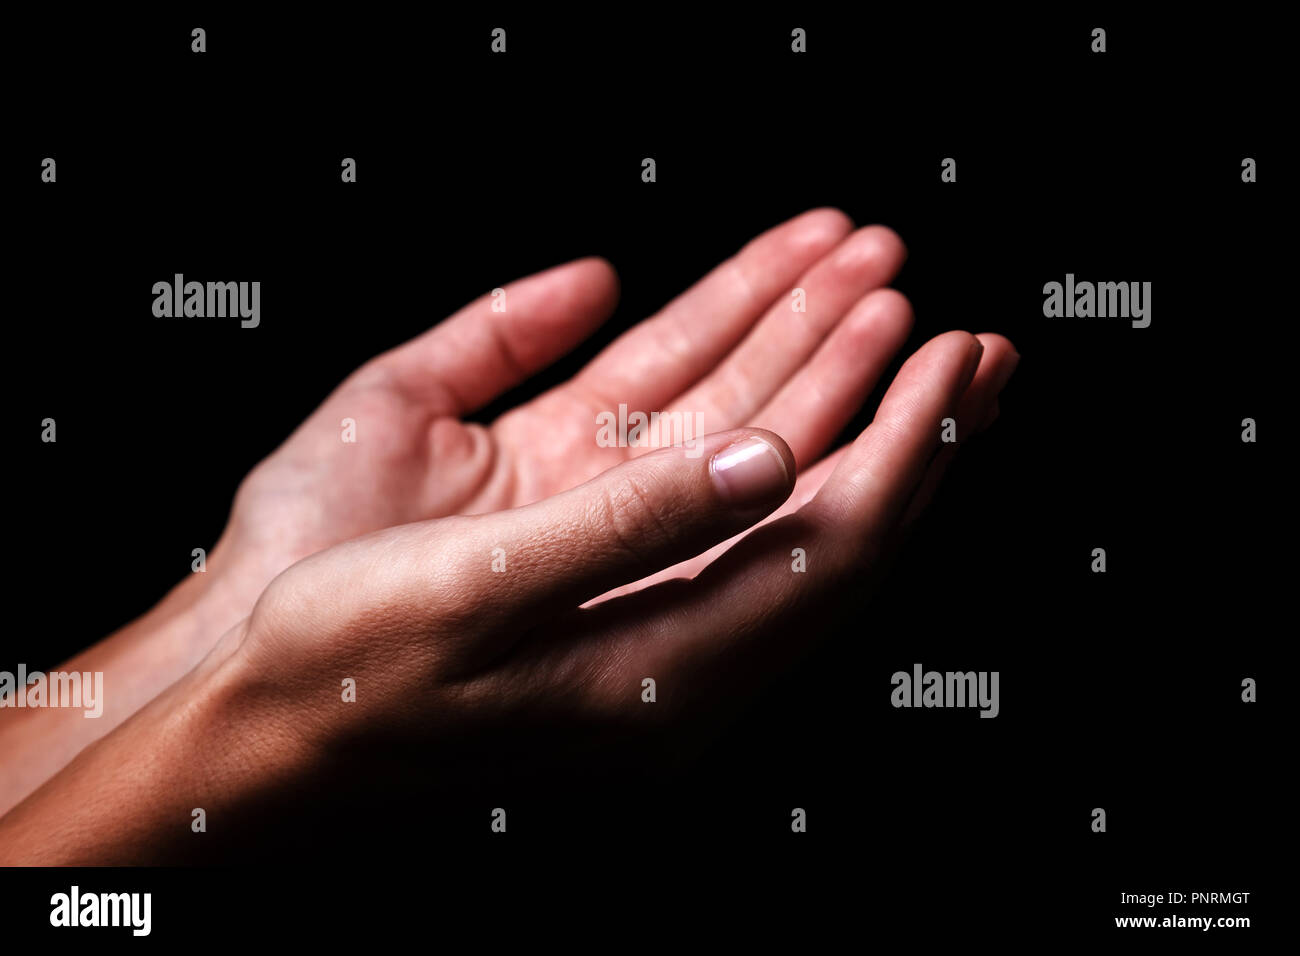 Les mains en prière avec les paumes vers le haut les bras tendus. Fond noir. Close up of woman main. Concept pour la prière, la foi, la religion, religieux, worshi Banque D'Images